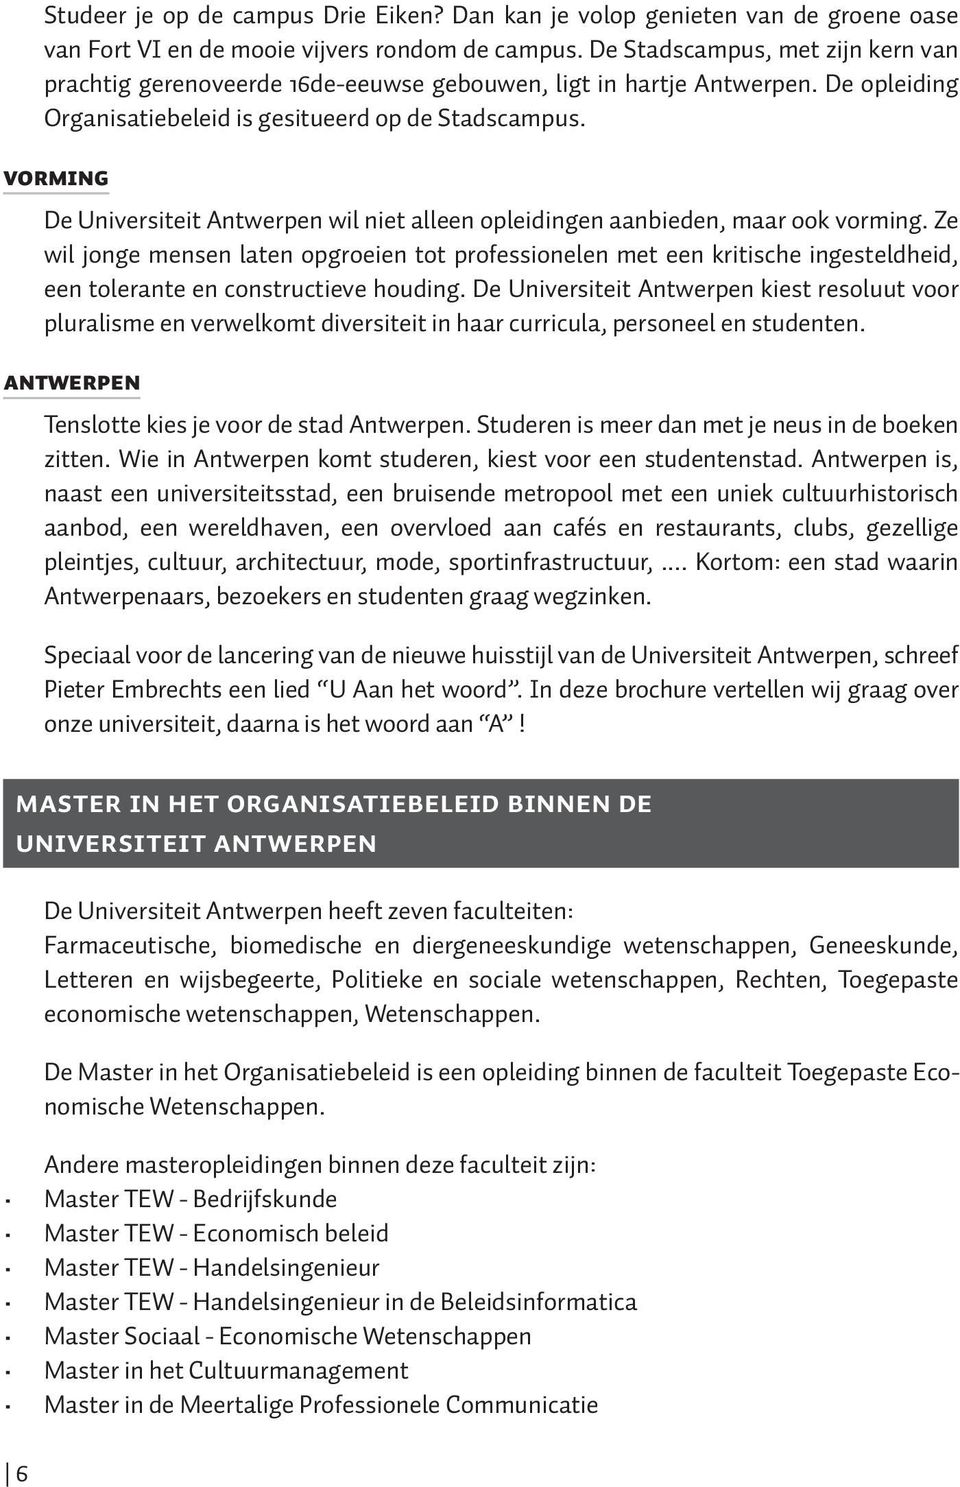 VORMING De Universiteit Antwerpen wil niet alleen opleidingen aanbieden, maar ook vorming.